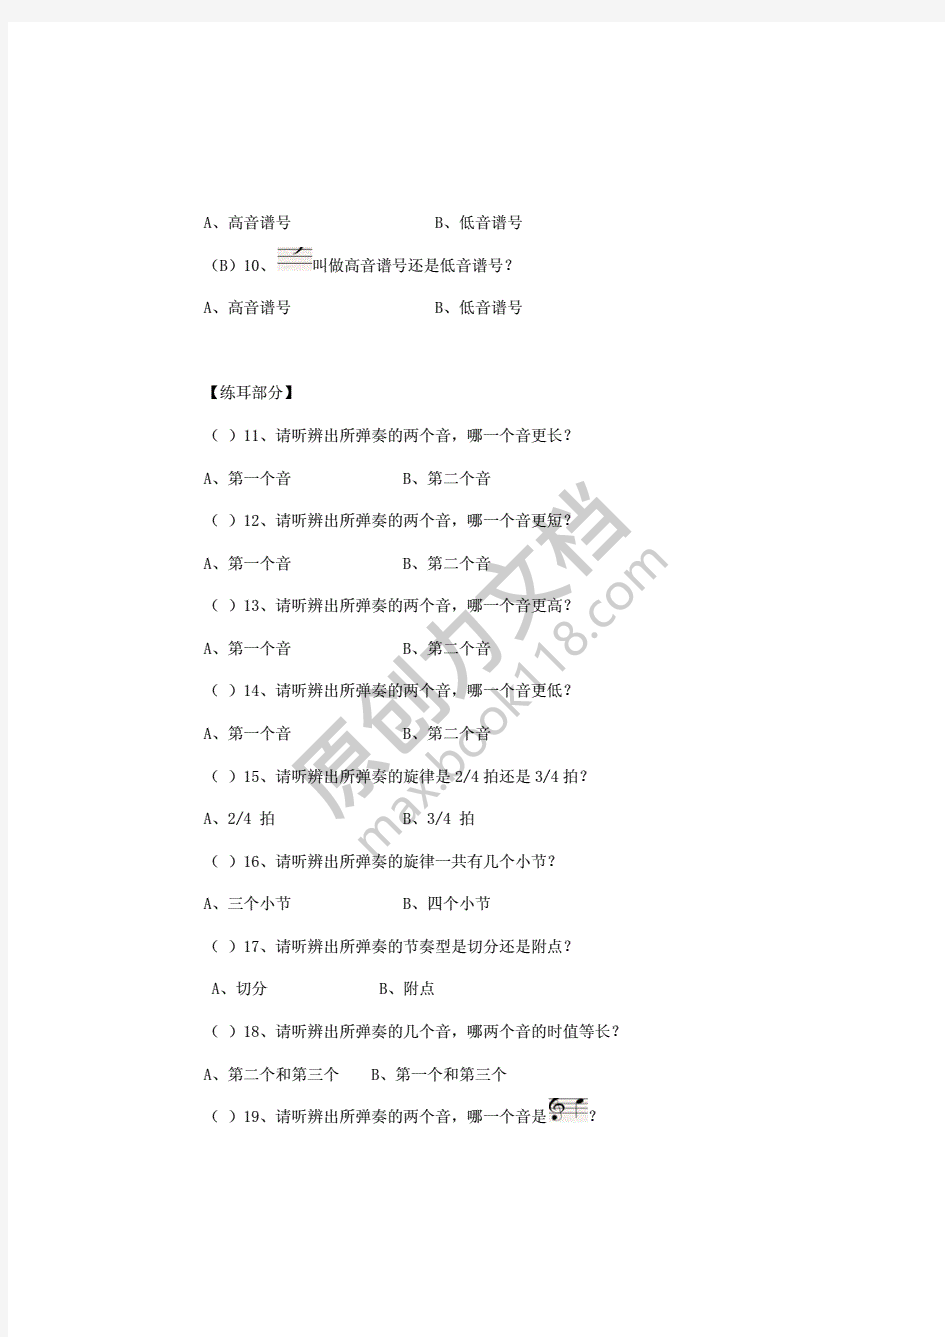 中国音乐学院基本乐理考级试卷(一级B学生)(含部分答案)